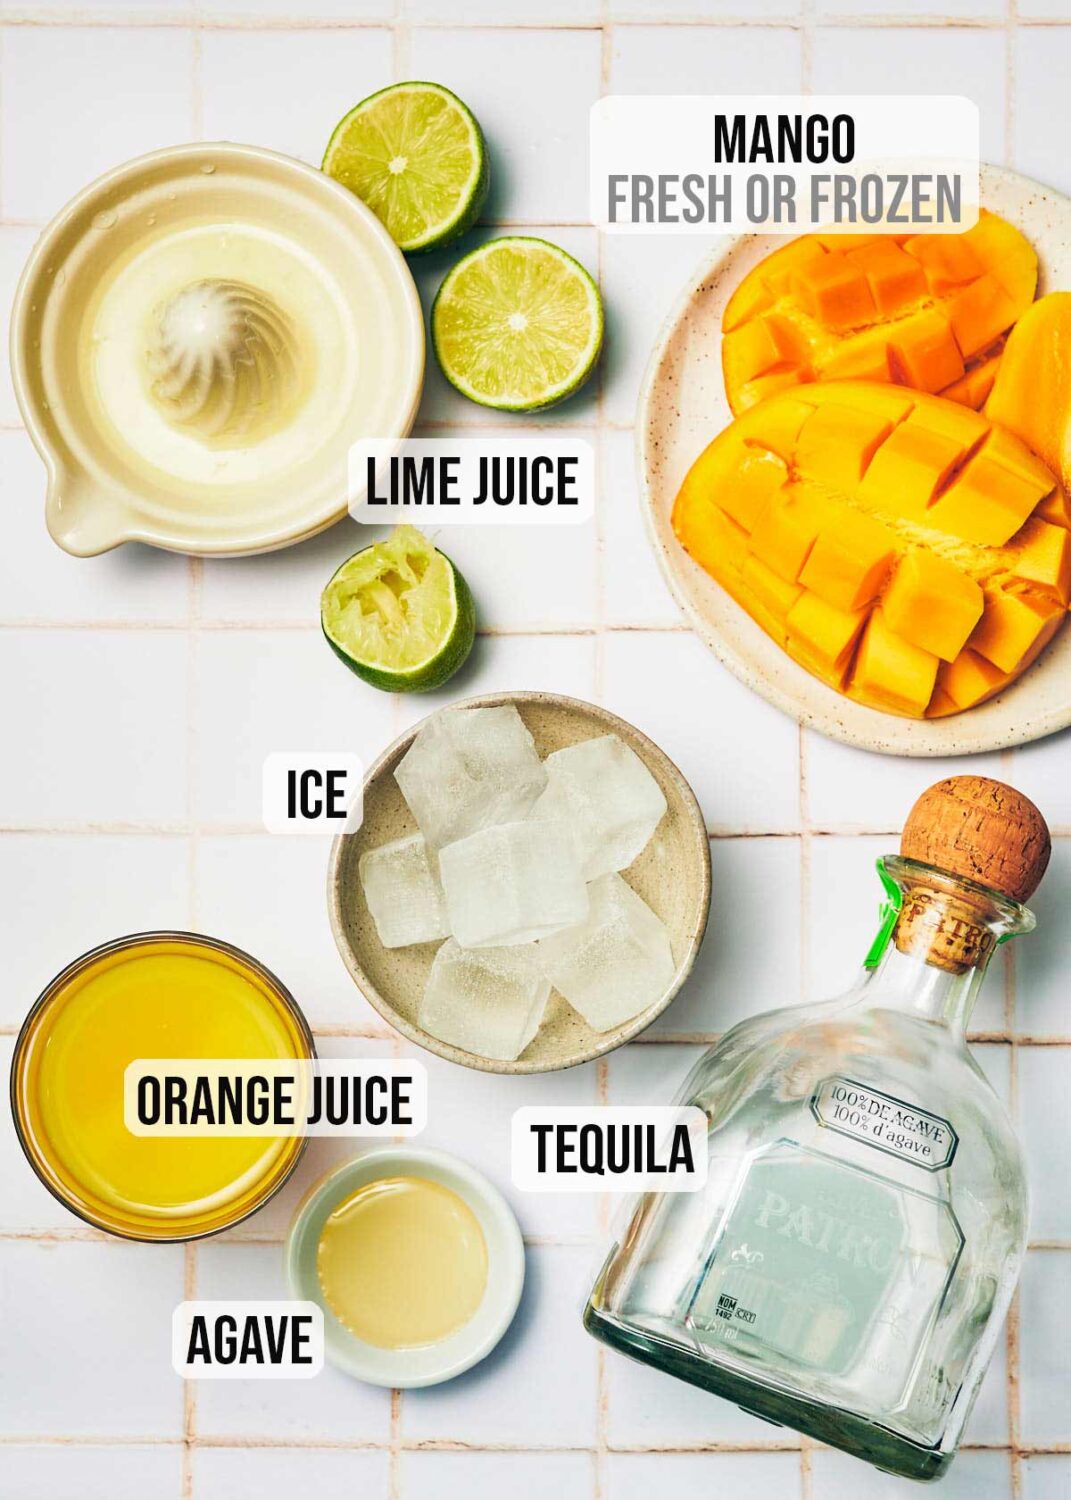 Ingredients to make Mangorita (Mango Frozen Margaritas).